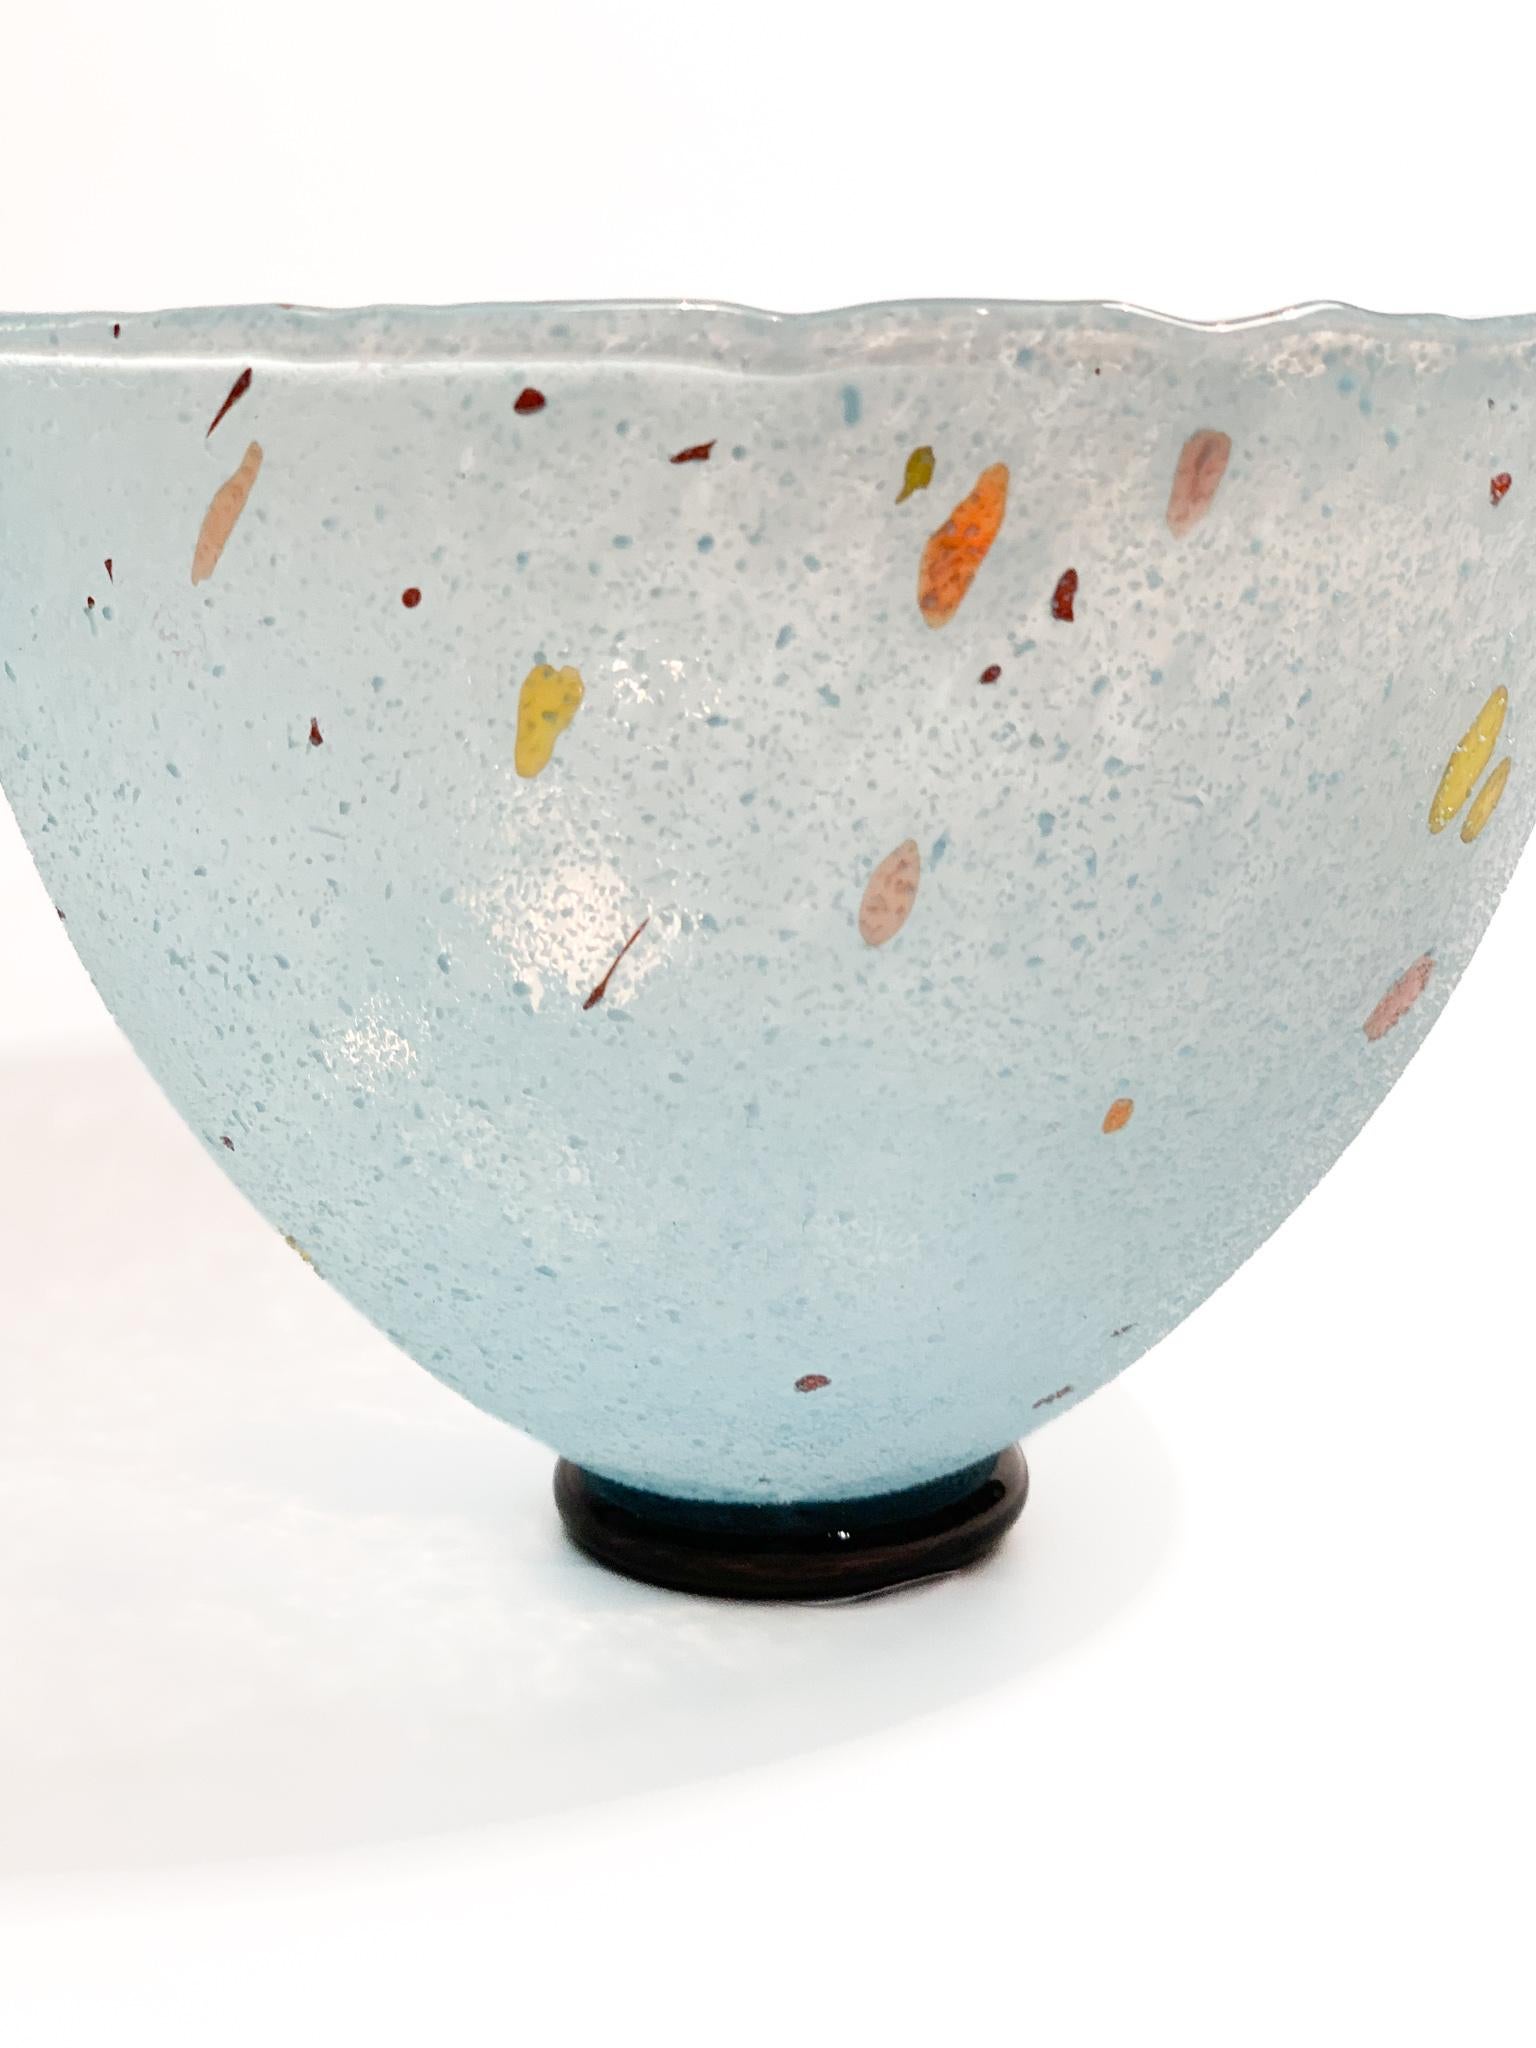 Swedish Light Blue Glass Bowl by Bertil Vallien for Kosta Boda form the 90s